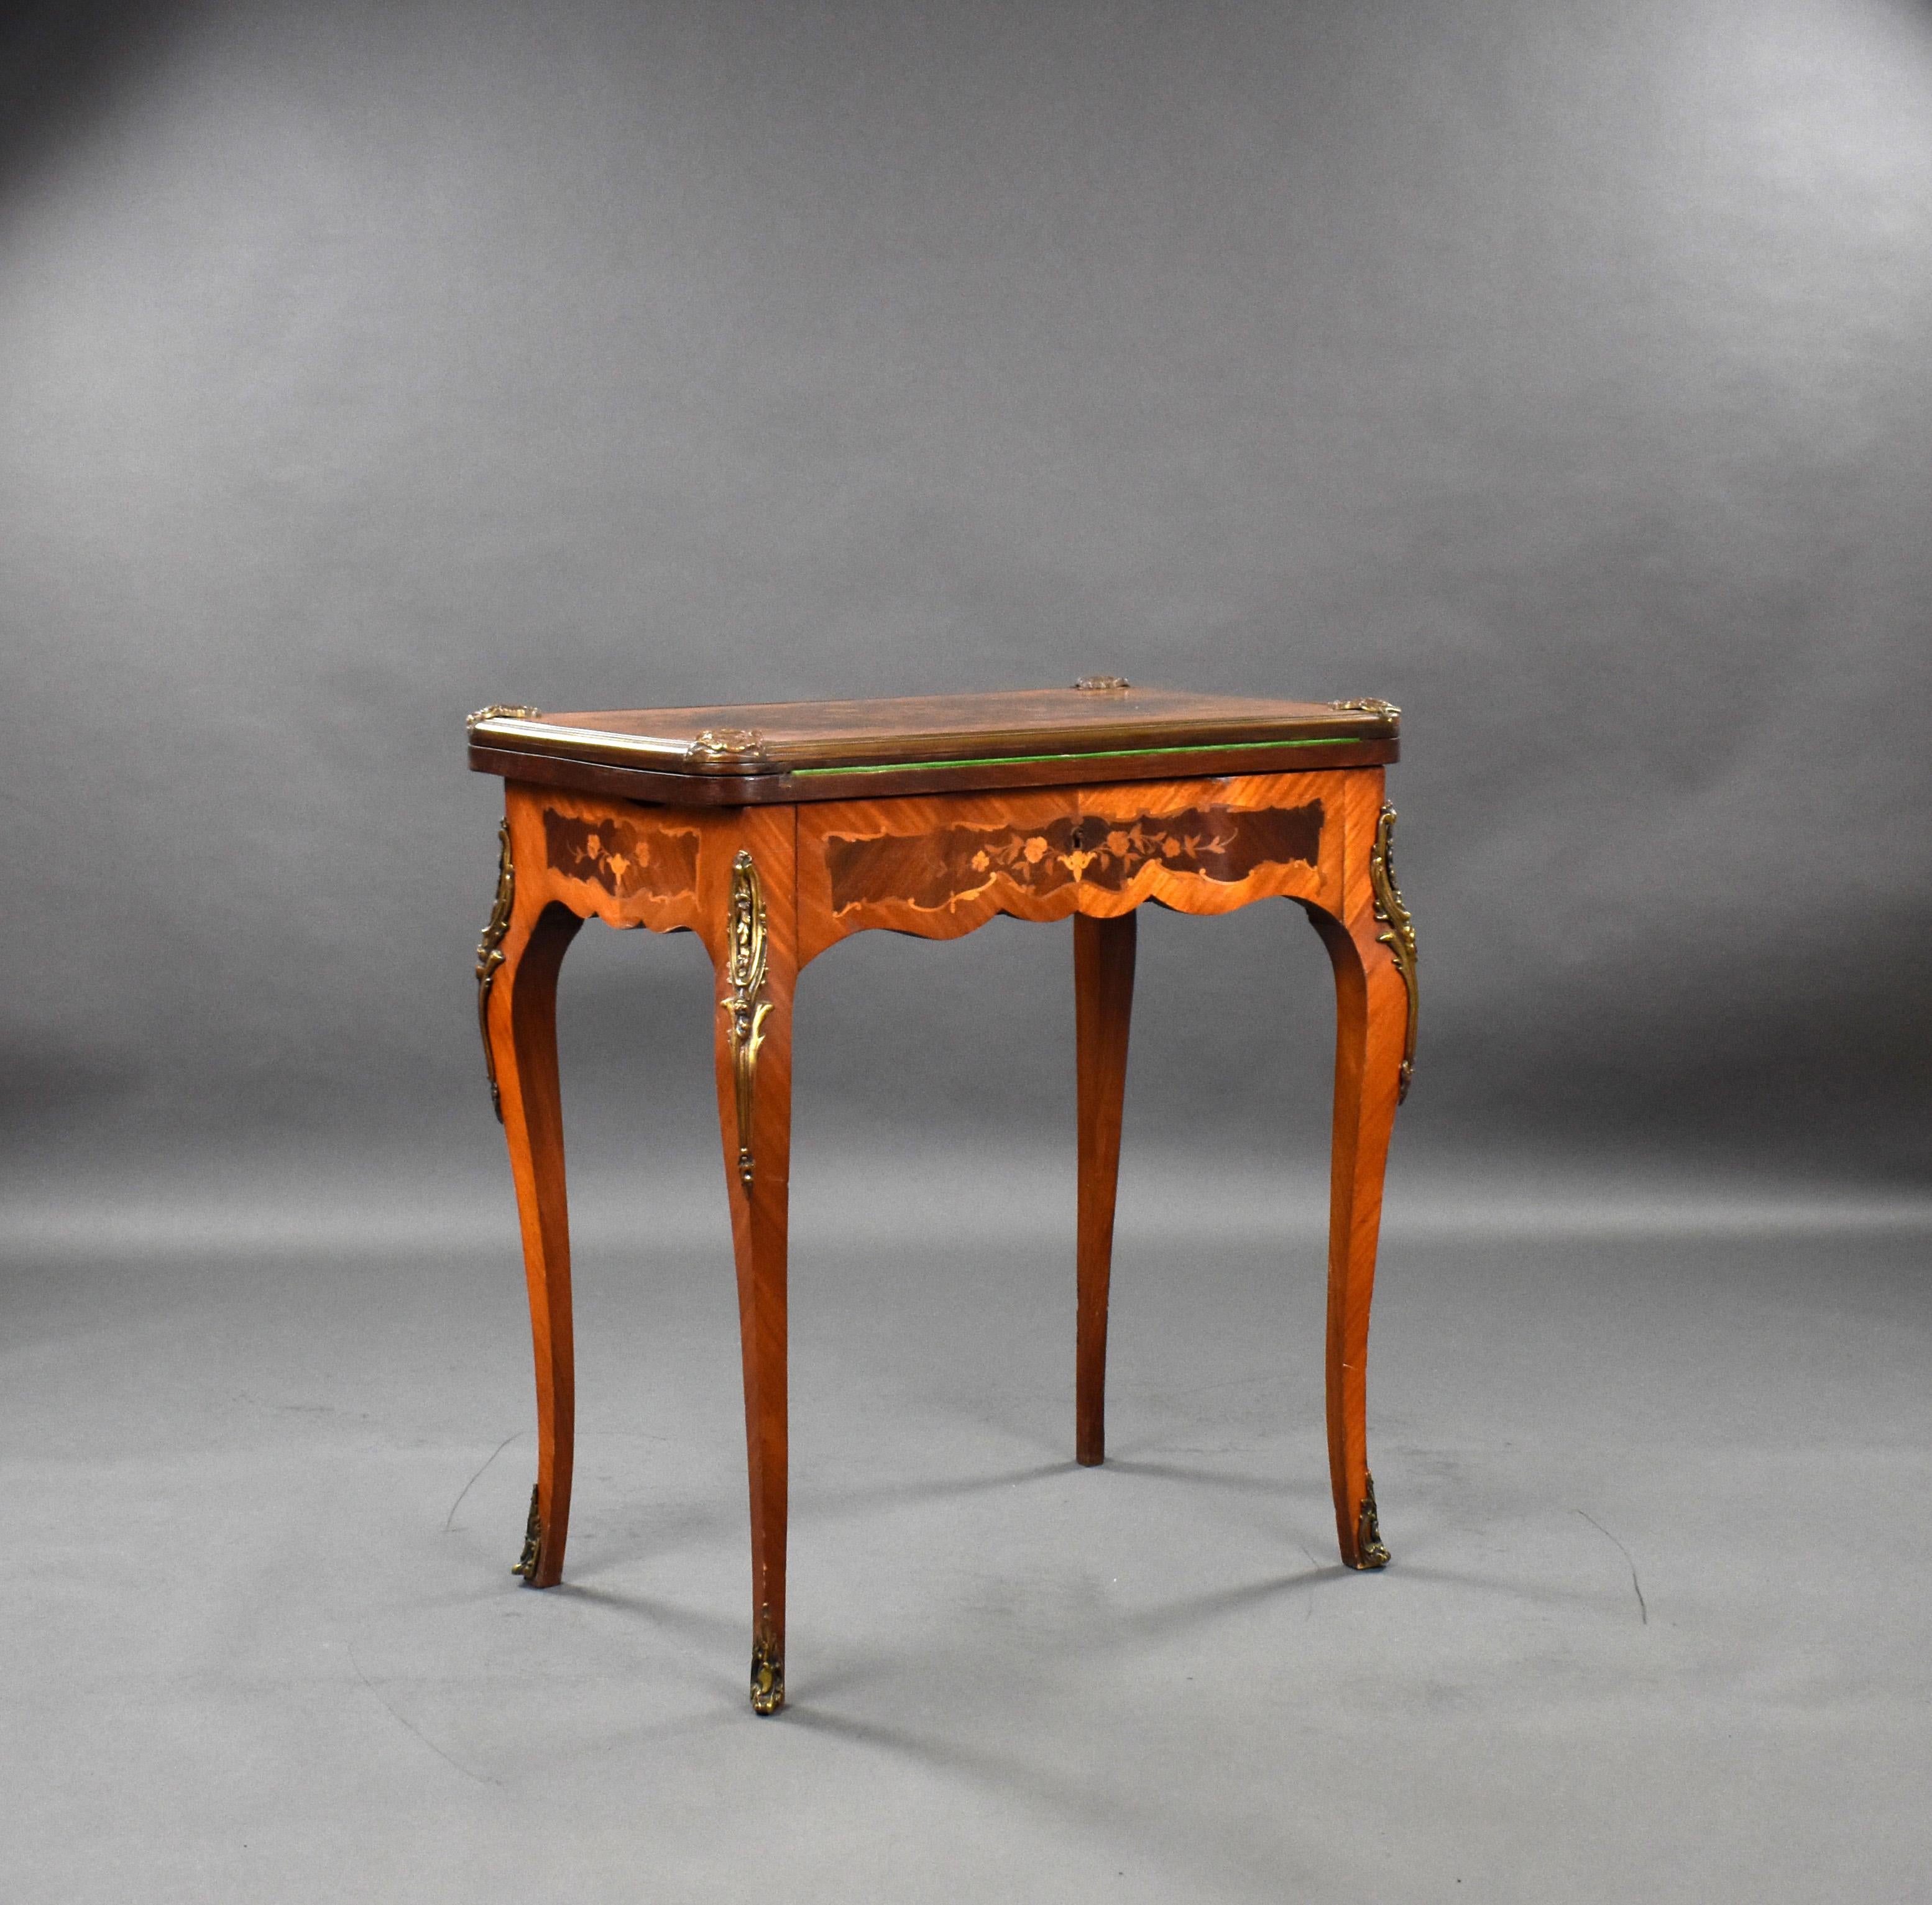 Zum Verkauf steht ein hochwertiger viktorianischer Kartentisch, der auch mit einer Eitelkeit ausgestattet ist. Der Kartentisch ist mit schönen Intarsien versehen und mit Ormolu-Beschlägen dekoriert. Das Stück befindet sich in einem für sein Alter